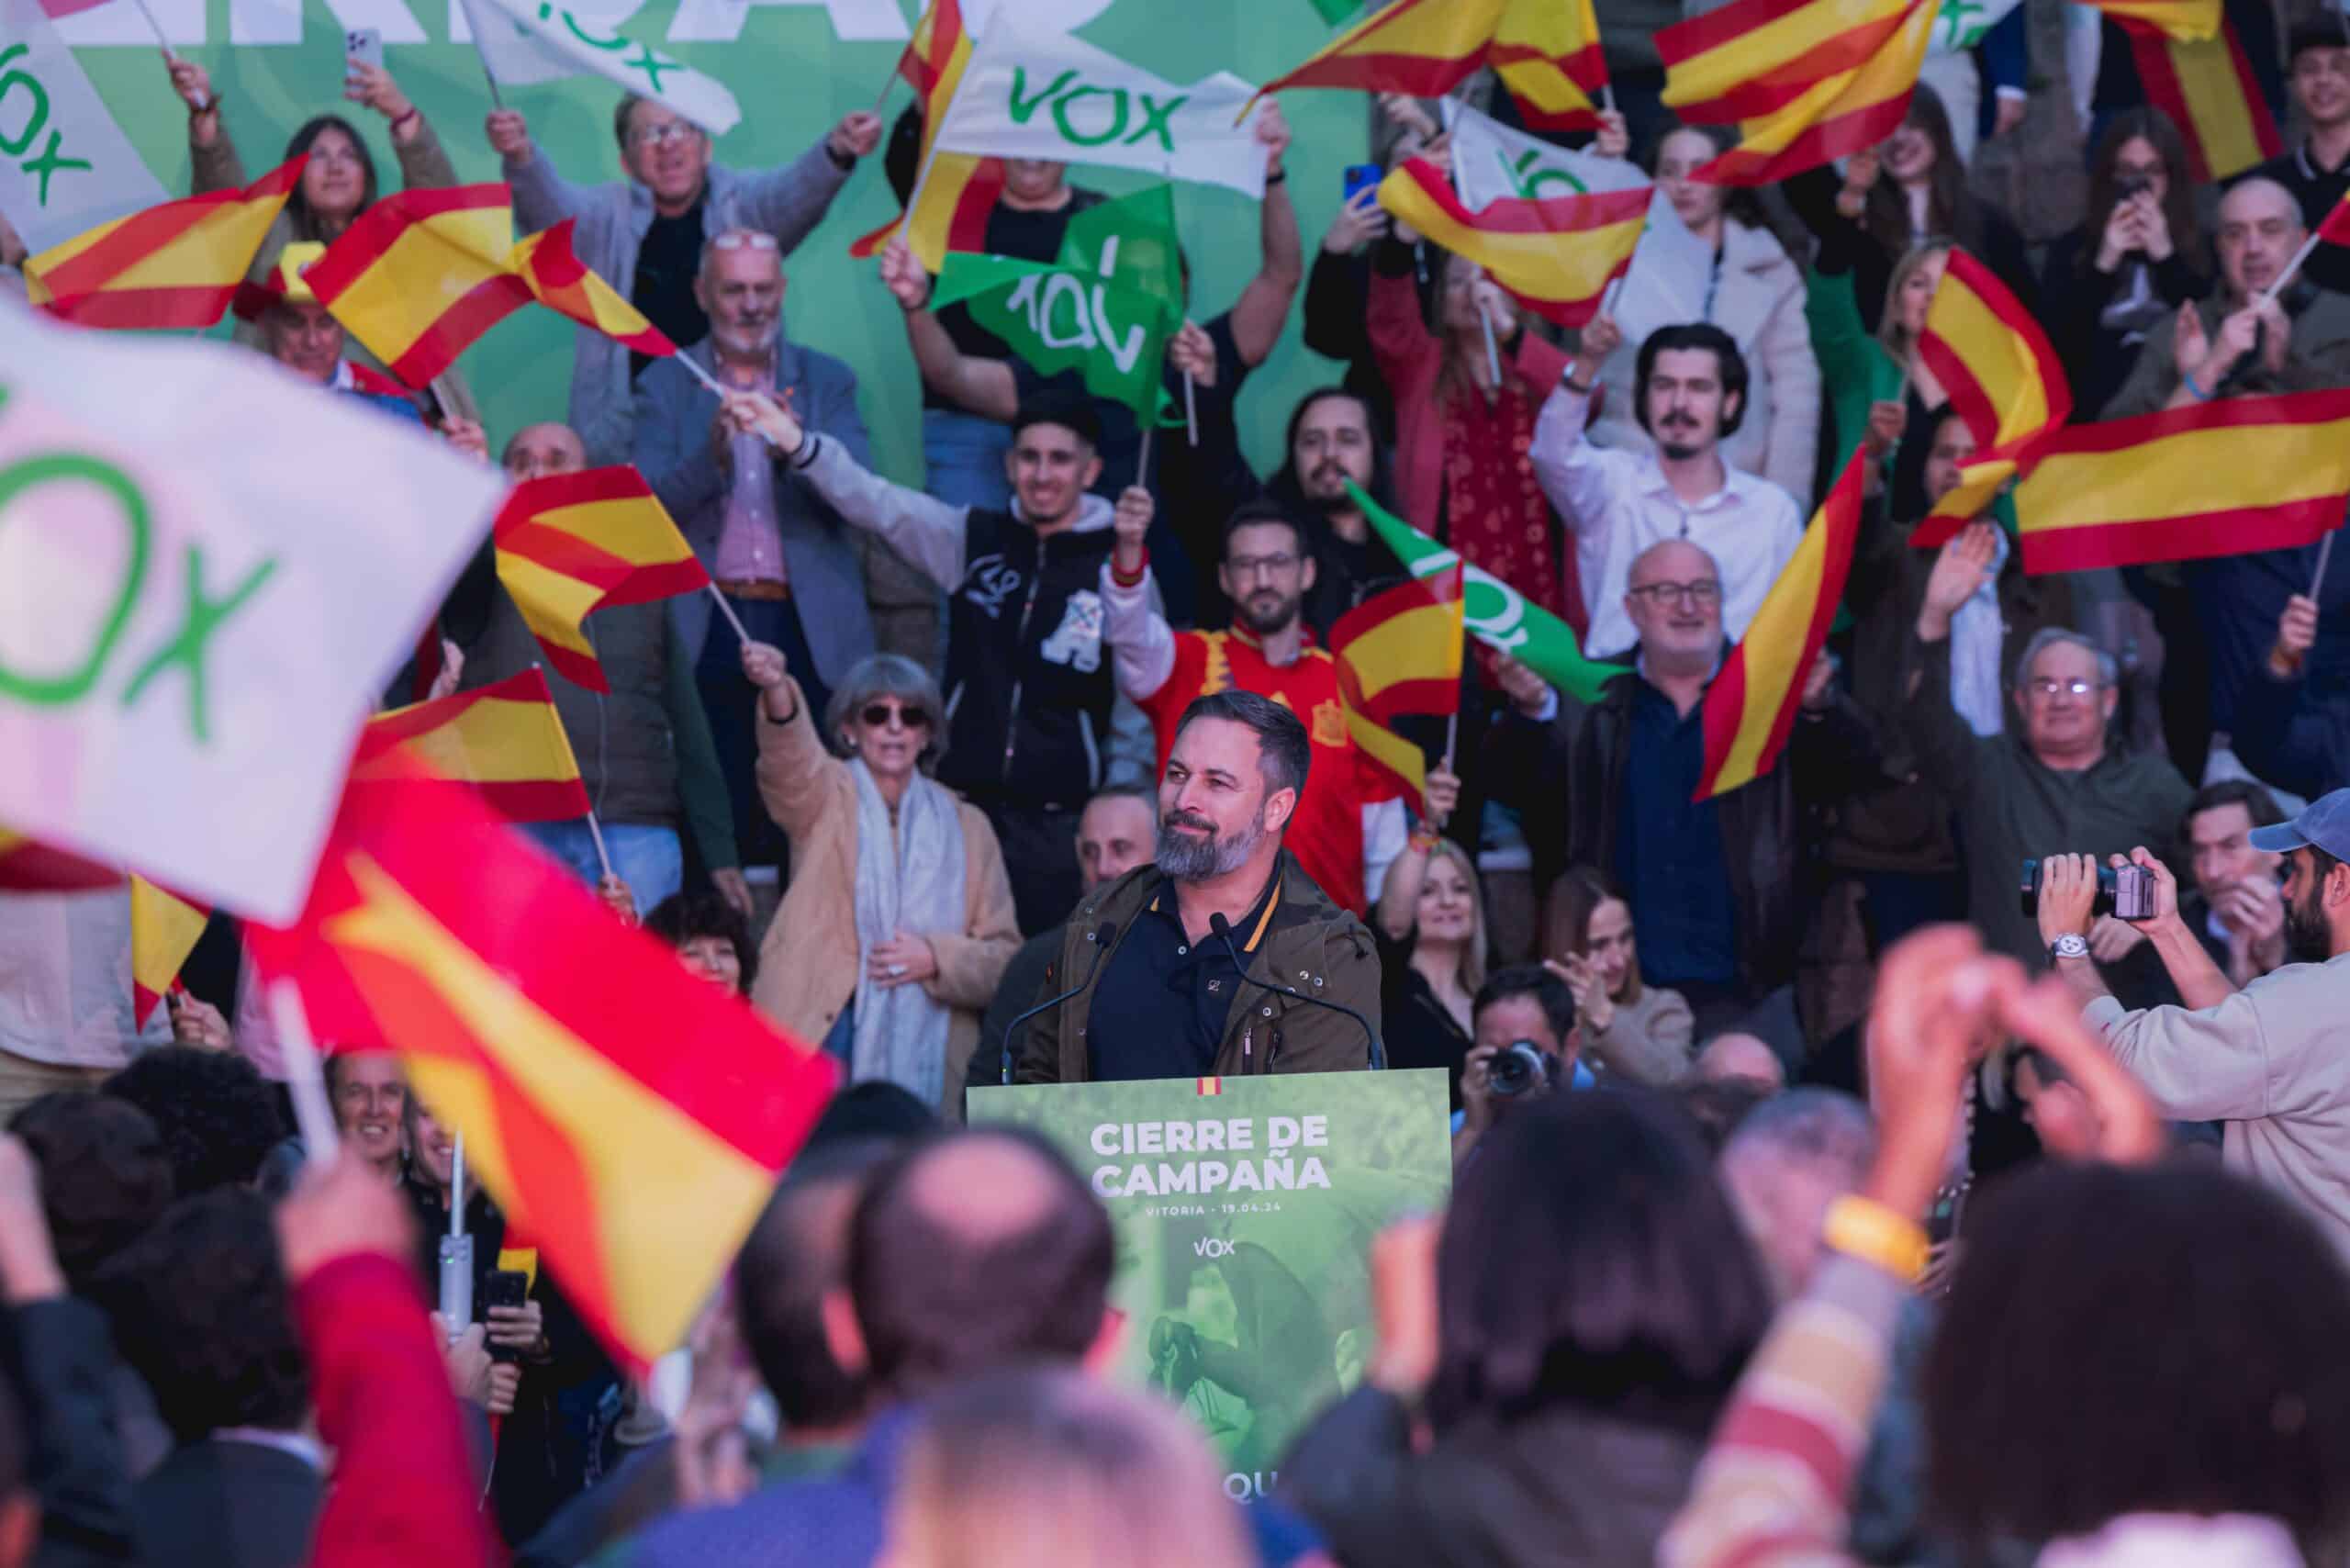 Abascal reitera en el mitin de cierre de campaña en Vitoria que sólo VOX representa la alternativa frente quienes alientan la inmigración ilegal